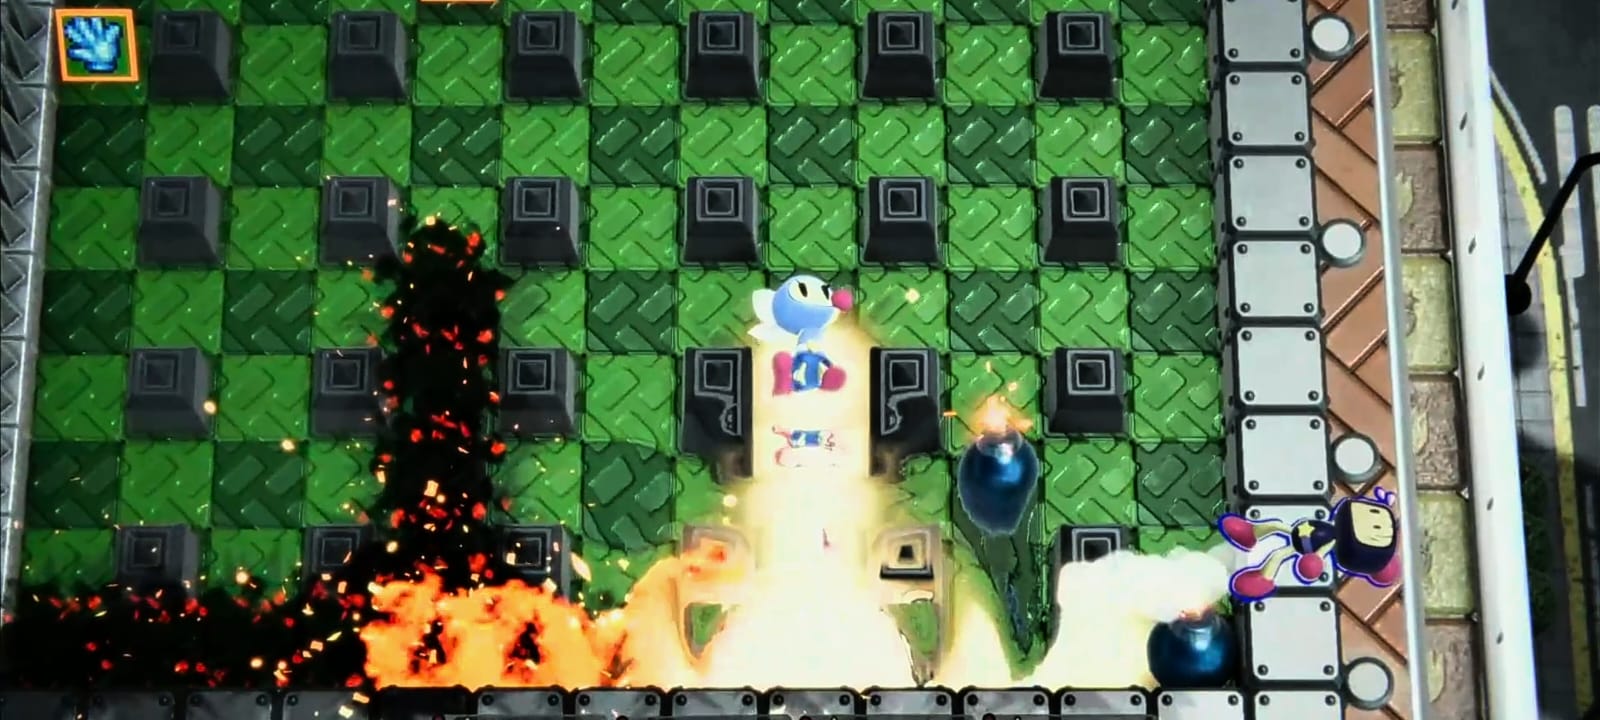 Reseña: Super Bomberman R2, un regreso explosivo de la franquicia 1